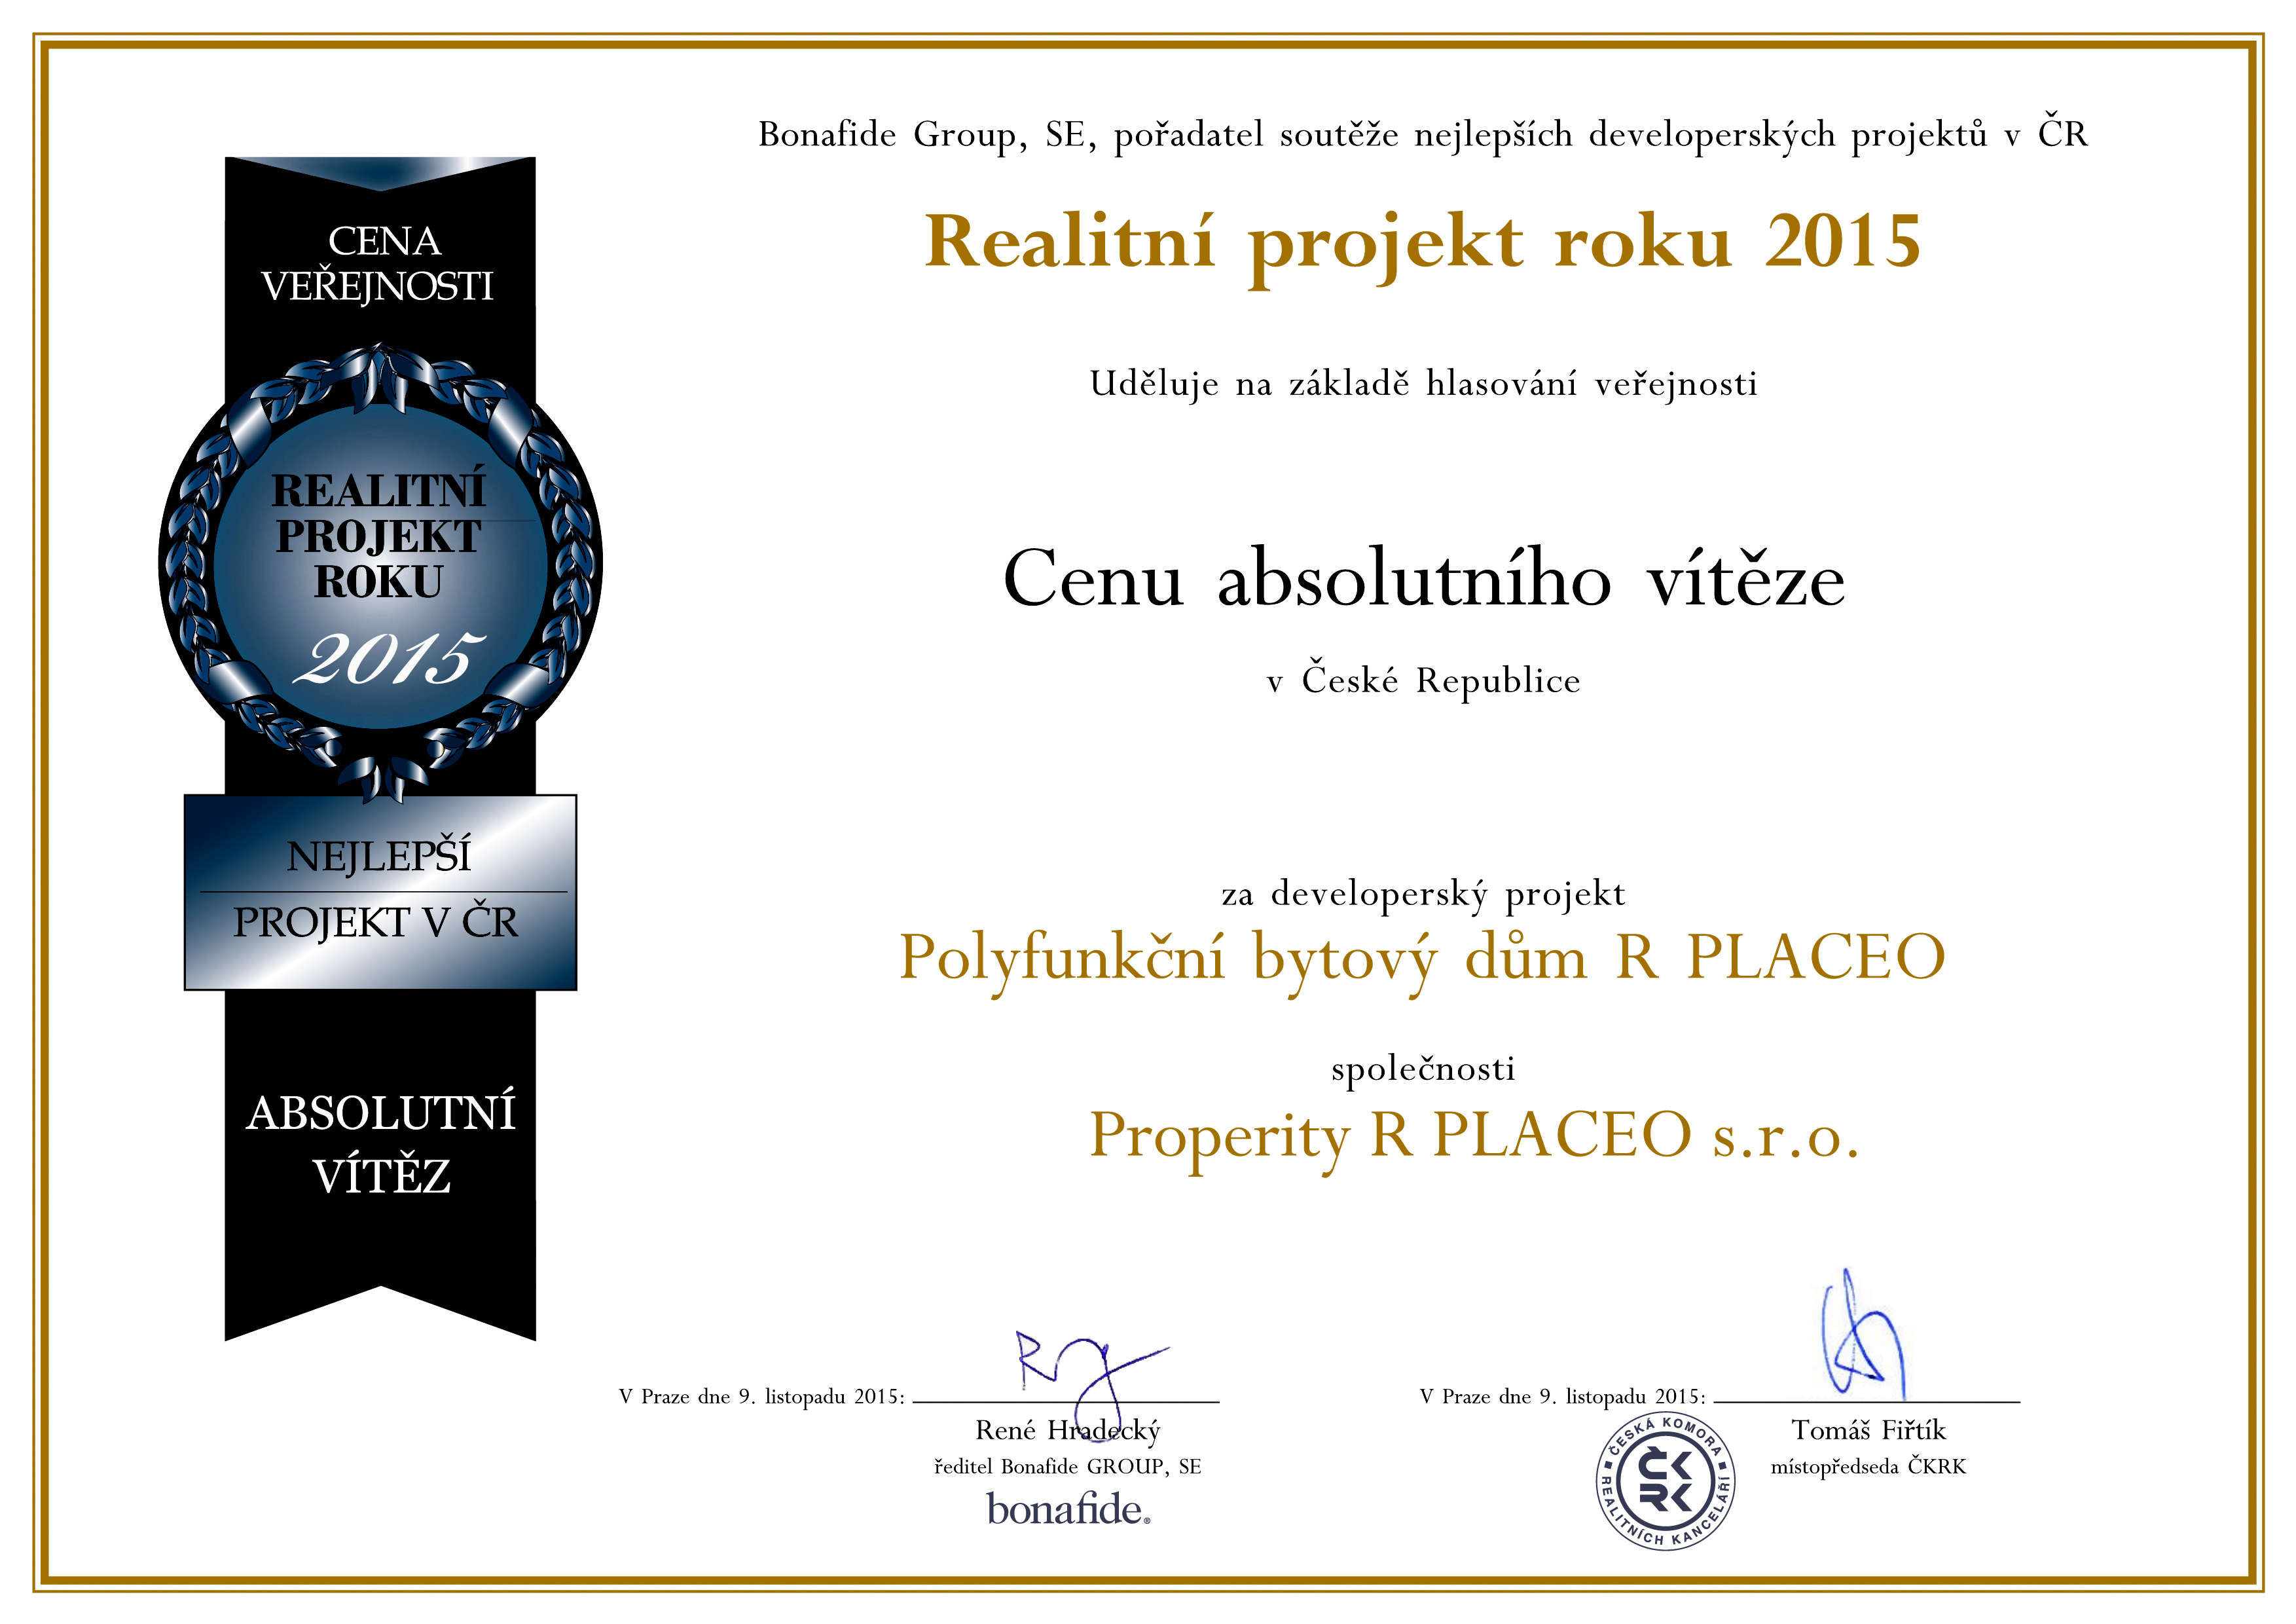 Polyfunkční bytový dům R PLACEO - cena absolutního vítěze realitní projektu roku 2015